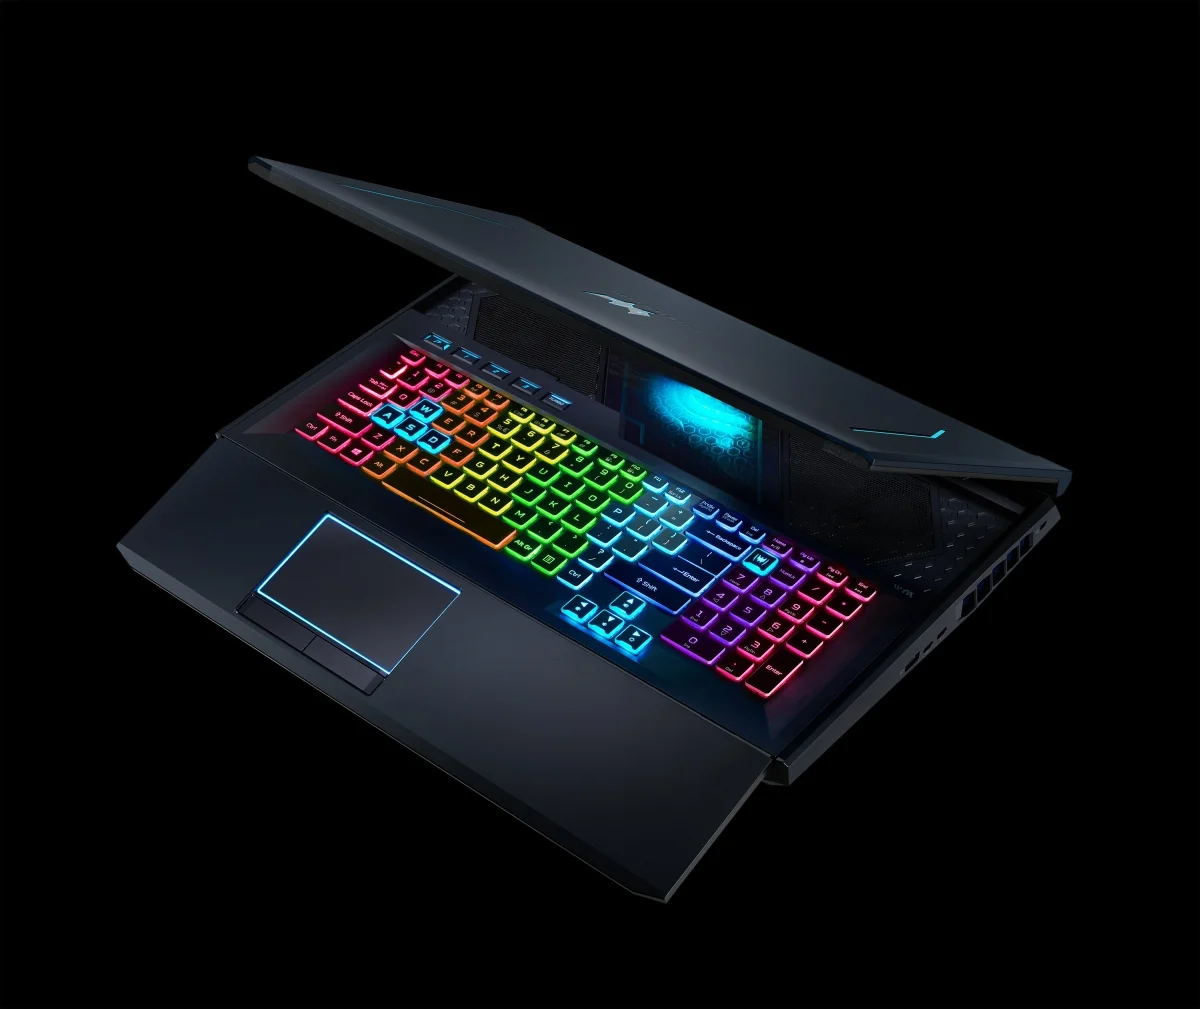 Acer представила игровой ноутбук Predator Helios 700 с выдвигающейся клавиатурой - фото 4